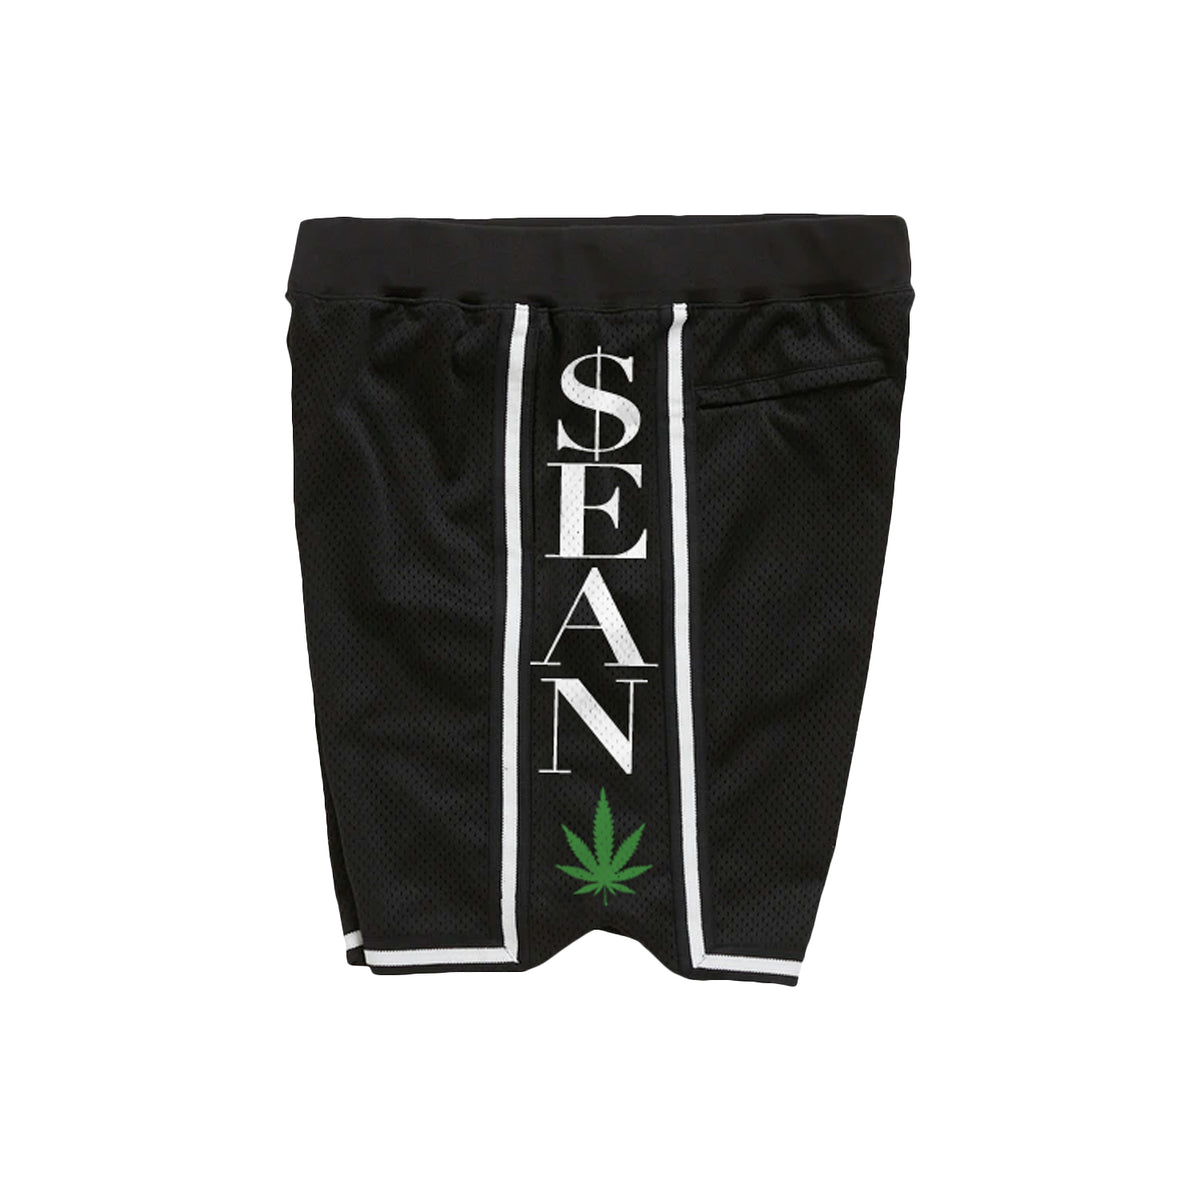 Contender Black Shorts $ean Left Side Design